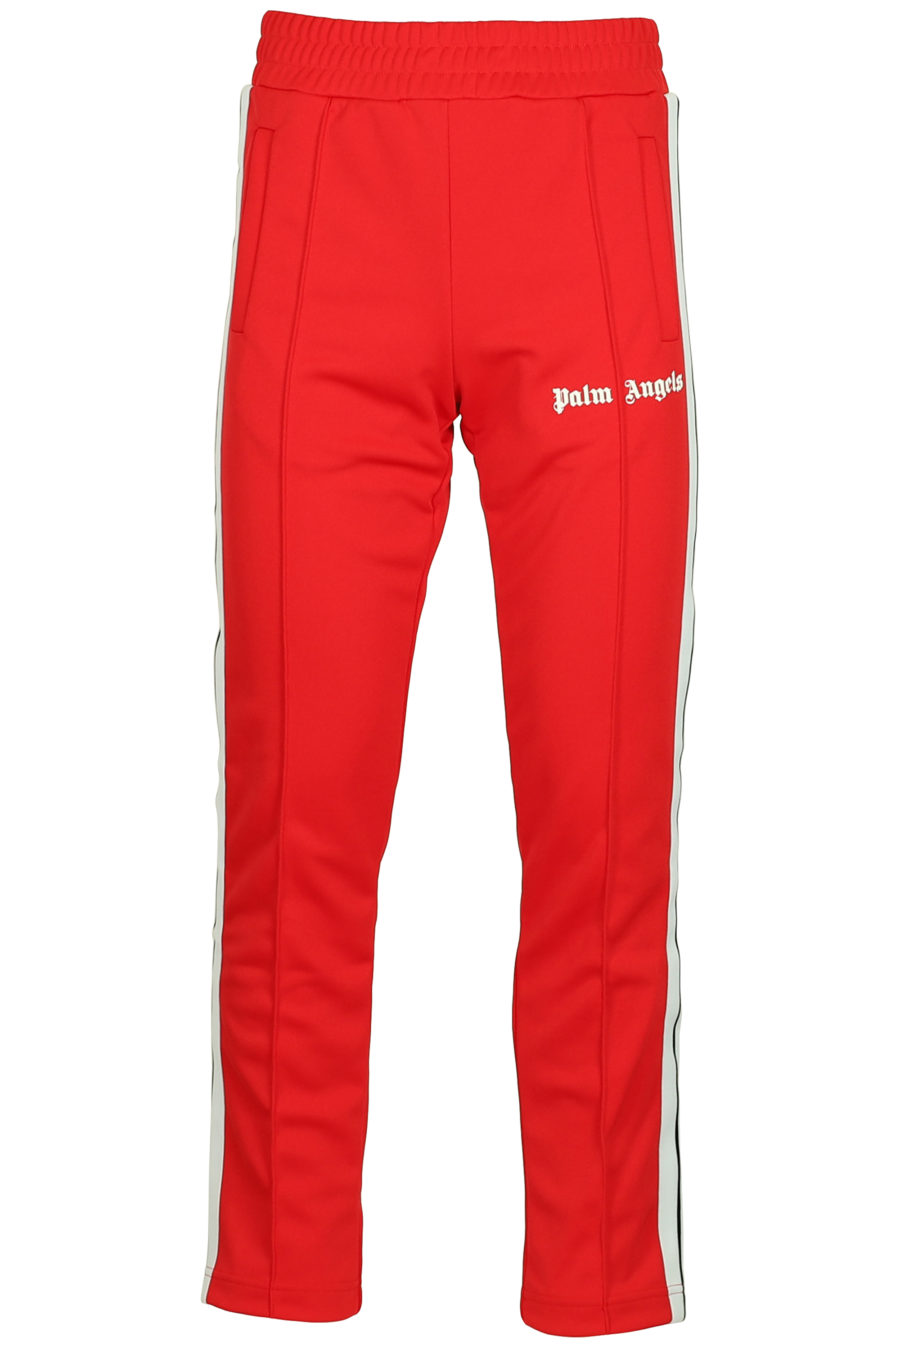 Pantalon rouge avec logo et bandes latérales - IMG 3766